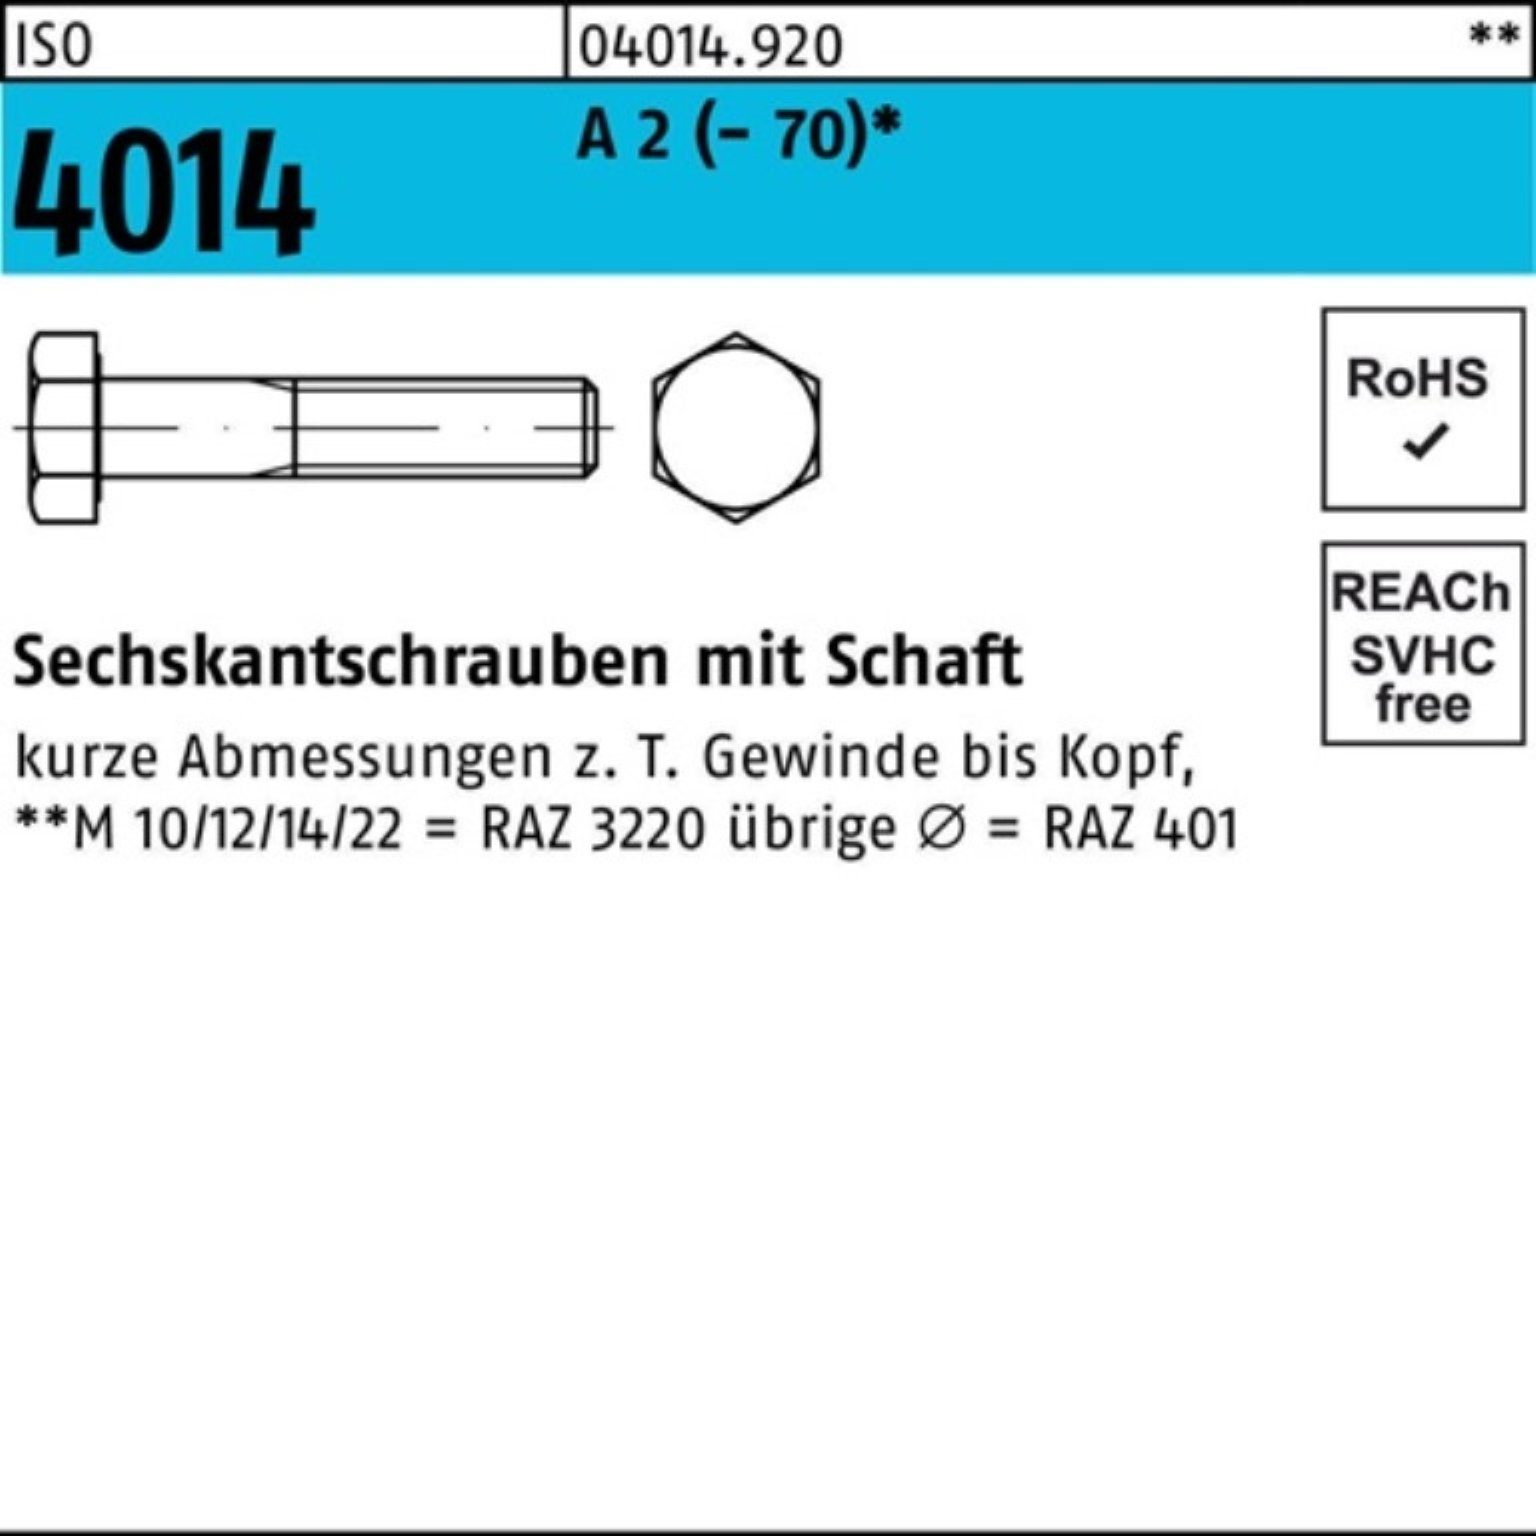 Bufab Sechskantschraube 100er Pack Sechskantschraube ISO 4014 Schaft M22x 160 A 2 (70) 1 St